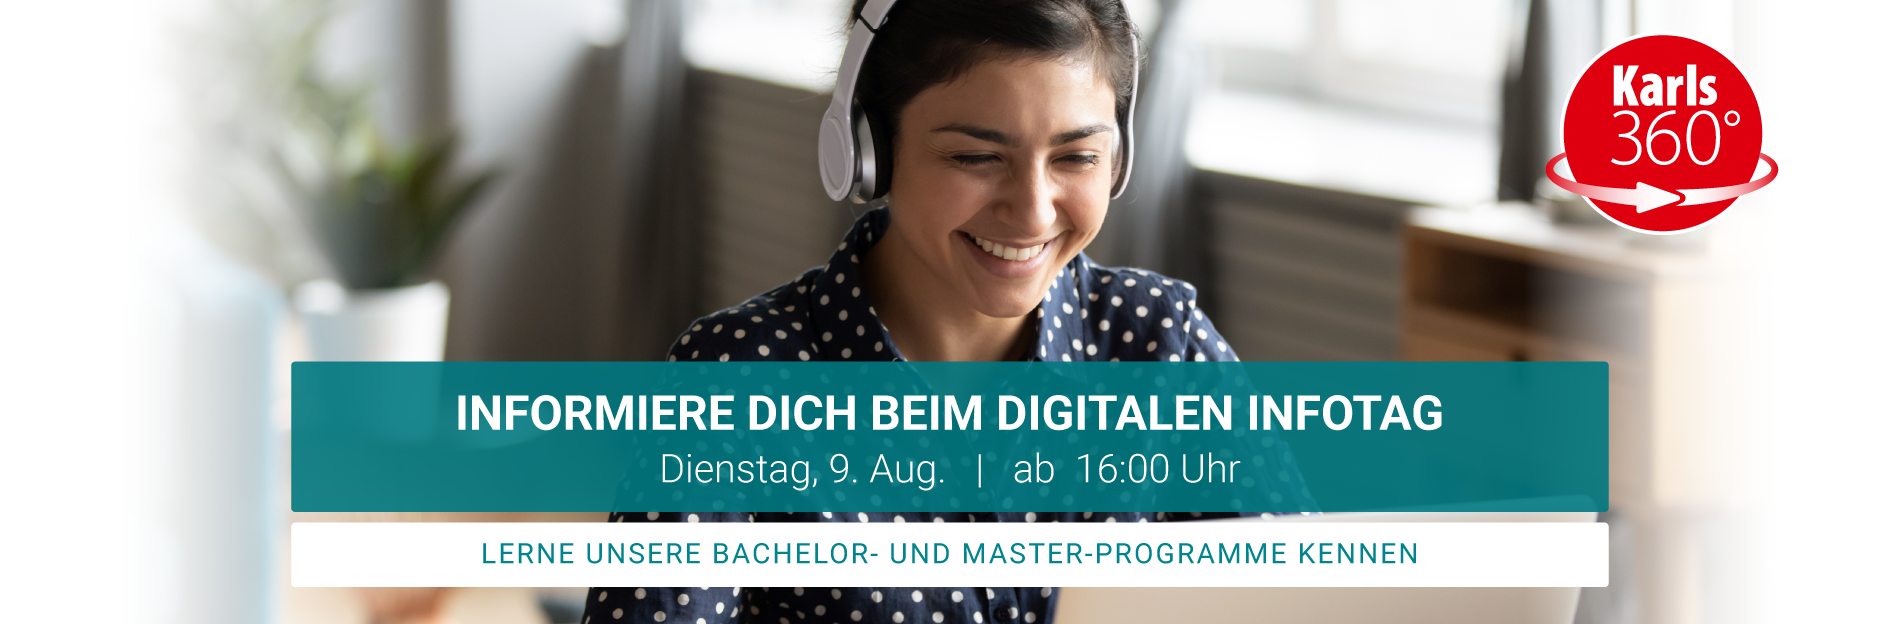 Digitale-Infotage-an-der-Karlshochschule